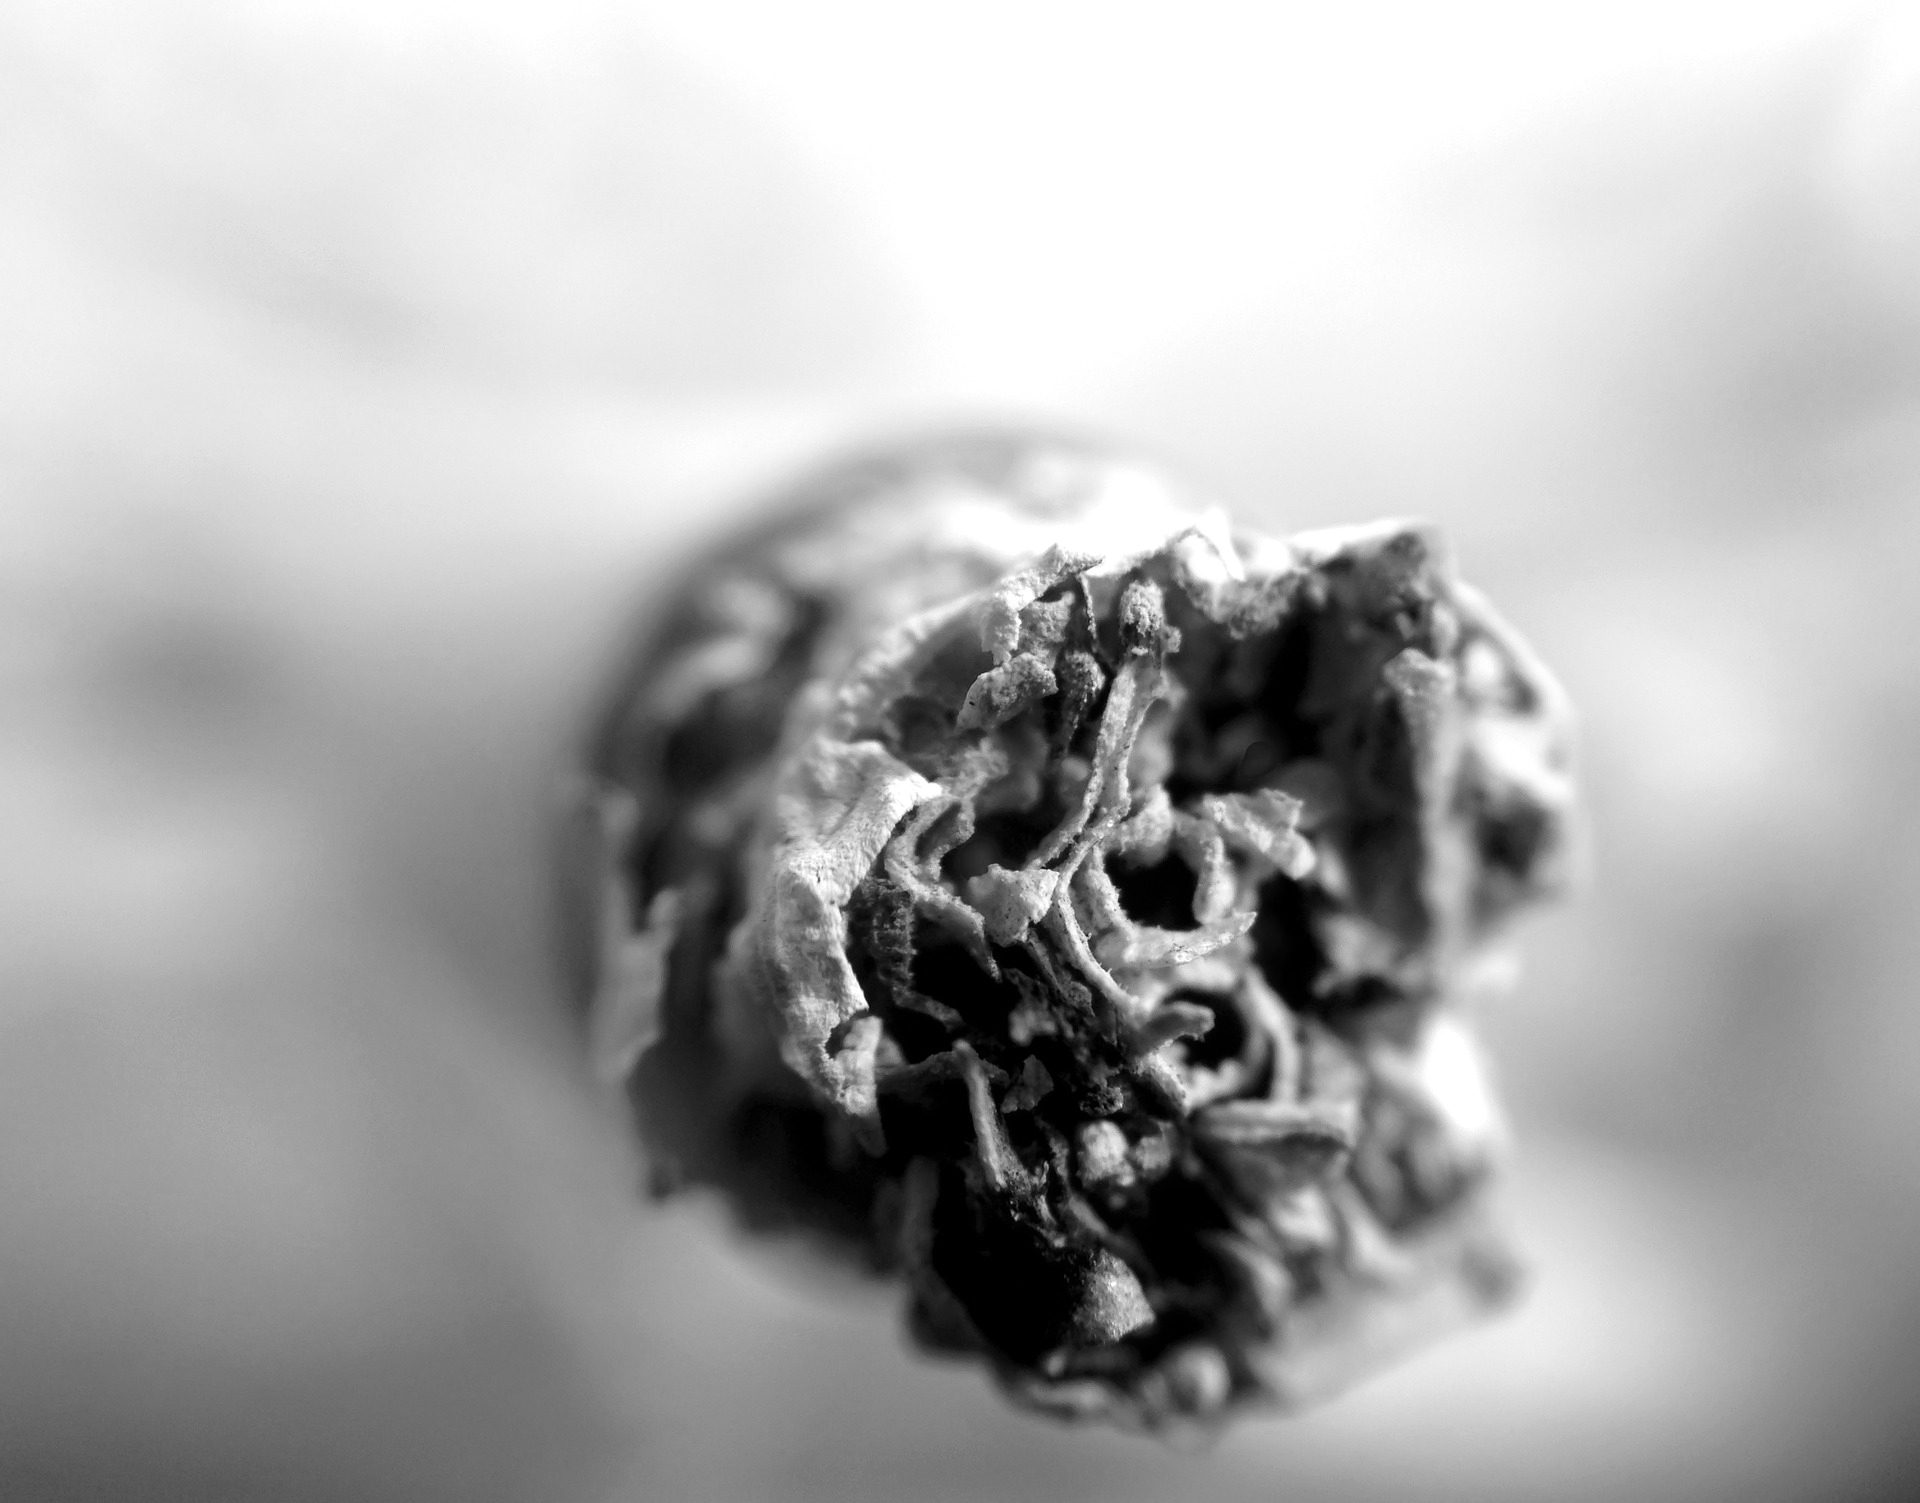 Close-up of a lit cigarette